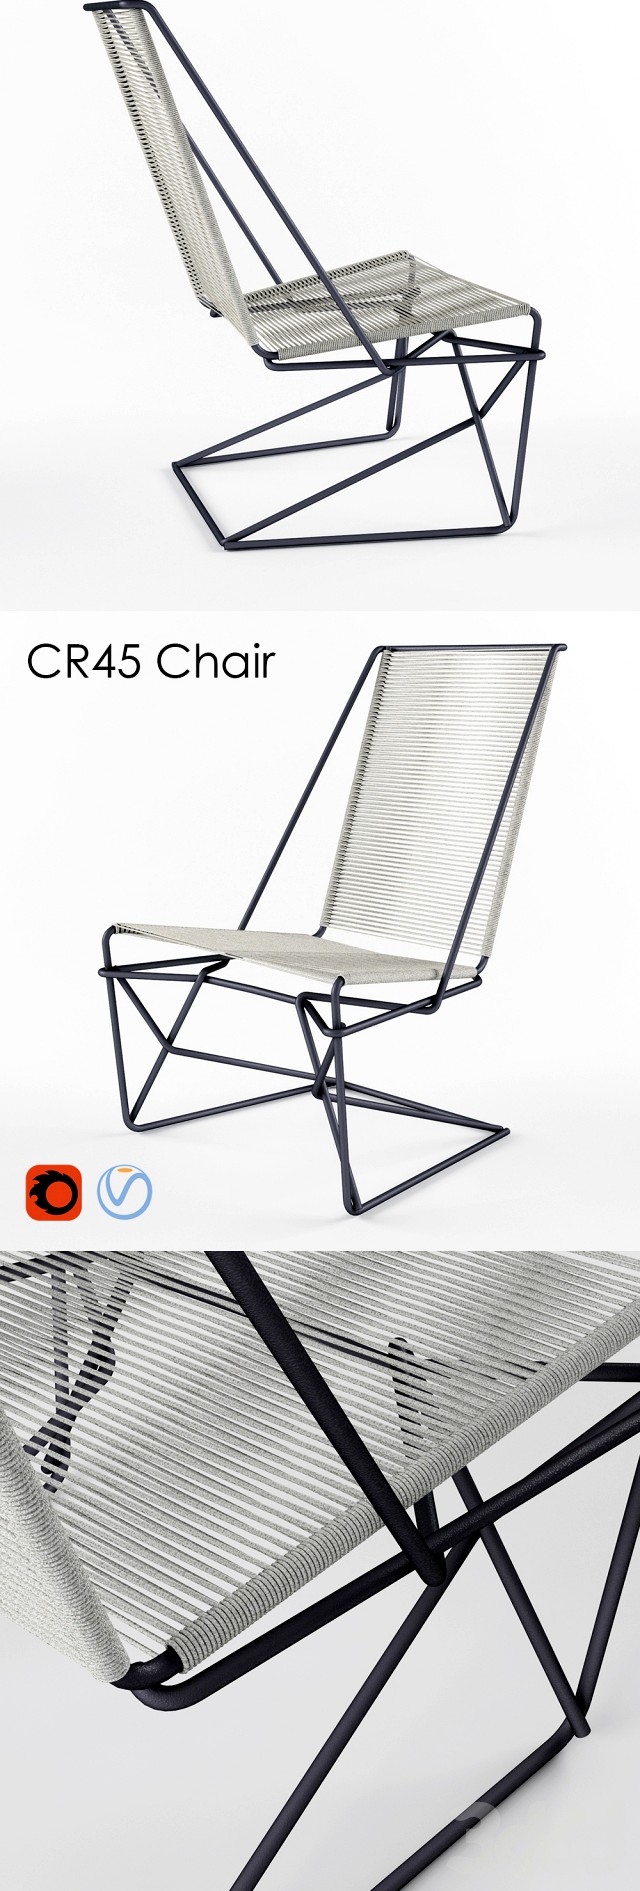 CR45 Chair